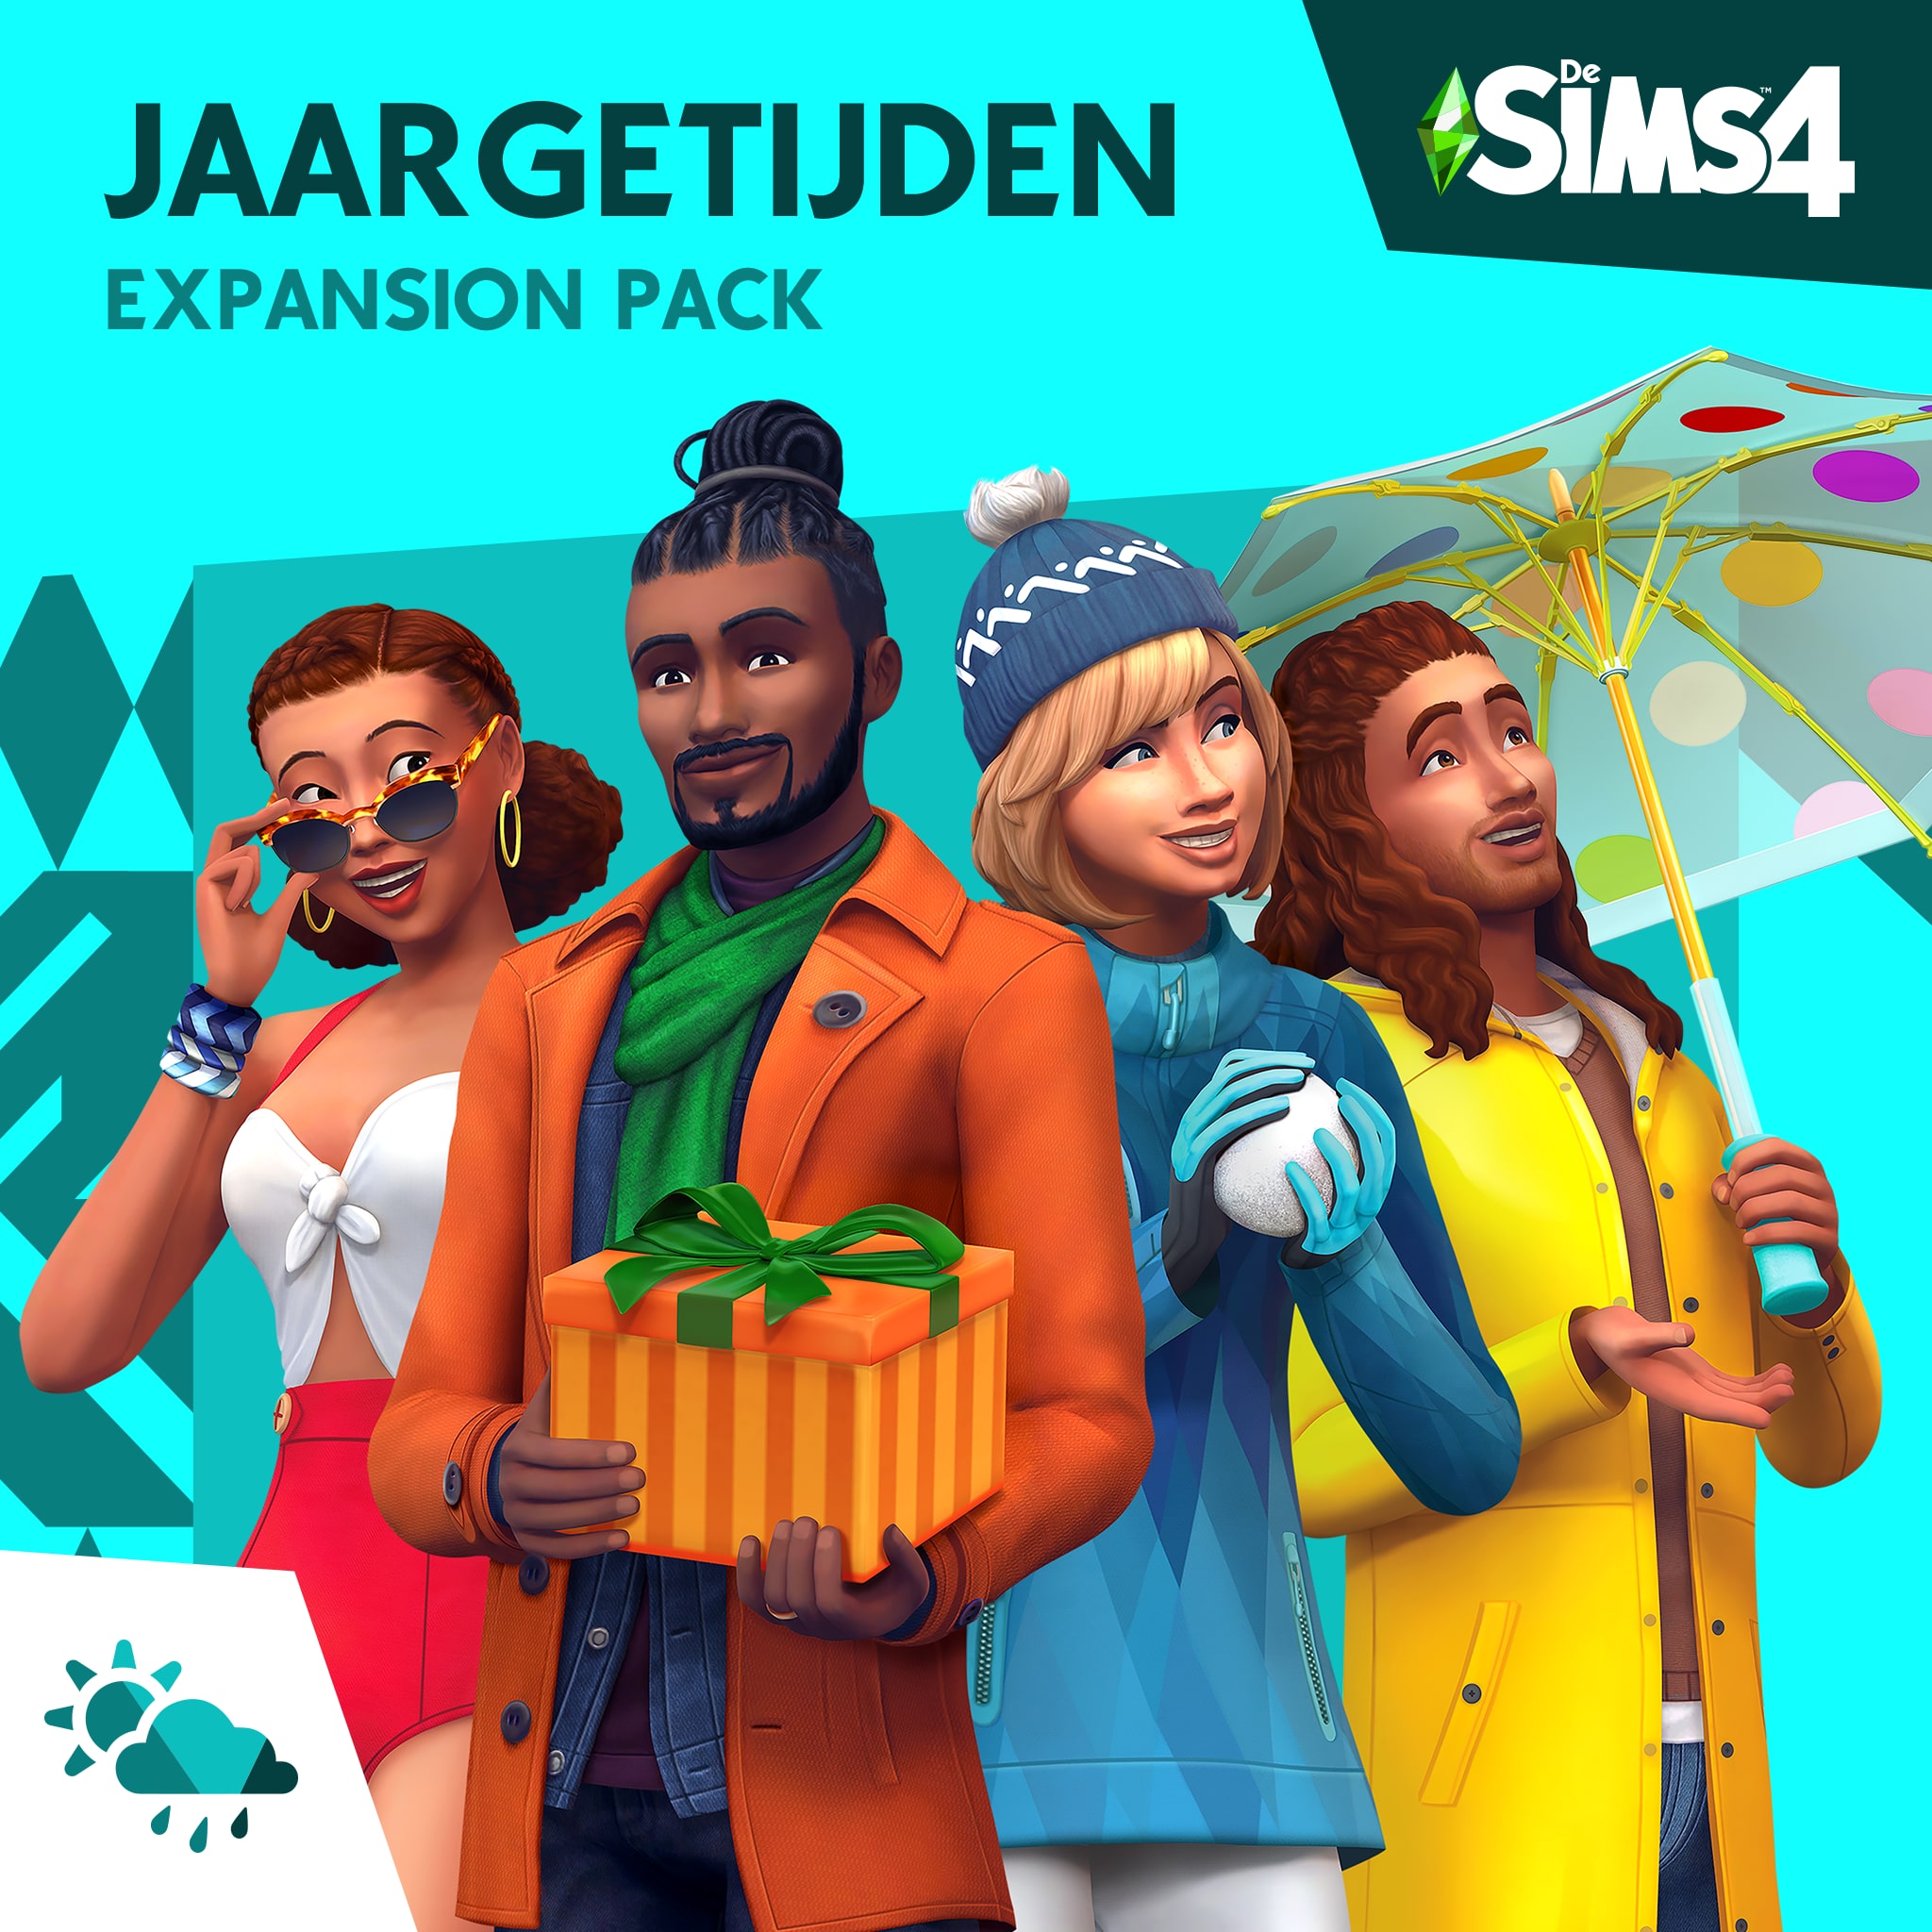 De Sims™ 4 Jaargetijden